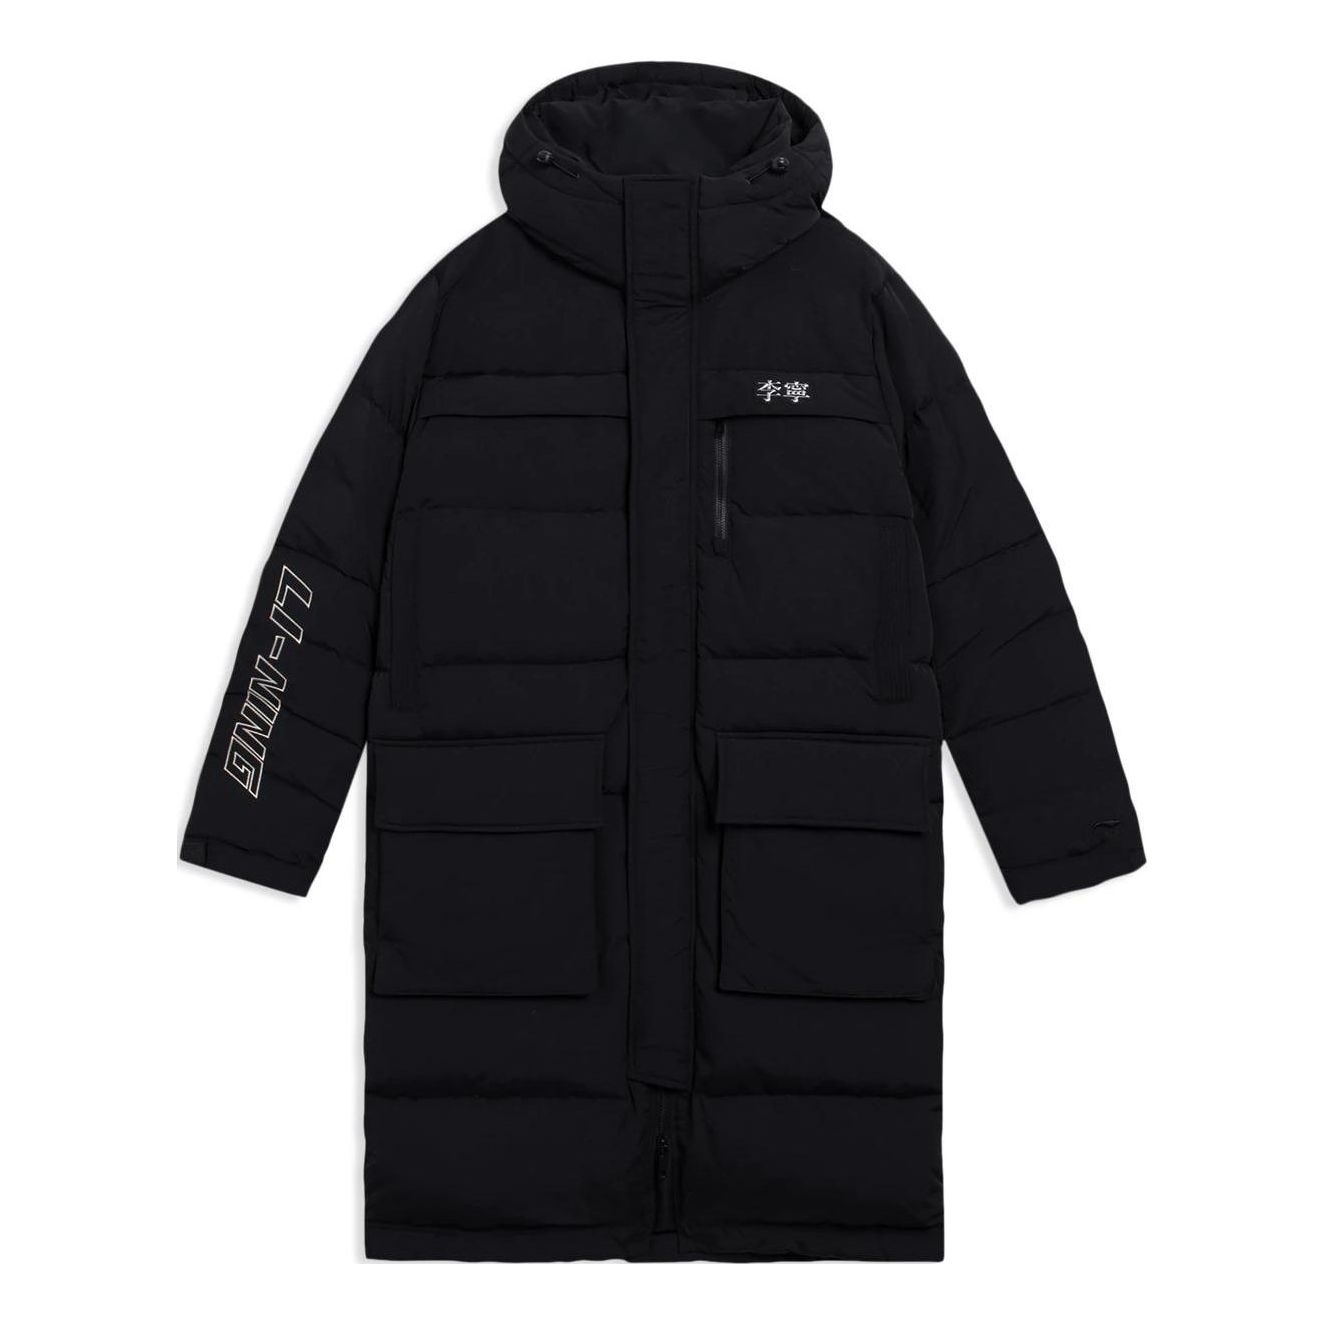 Li-Ning Winter Lifestyle Long Down Jacket 'Black' AYMS065-2 - 1